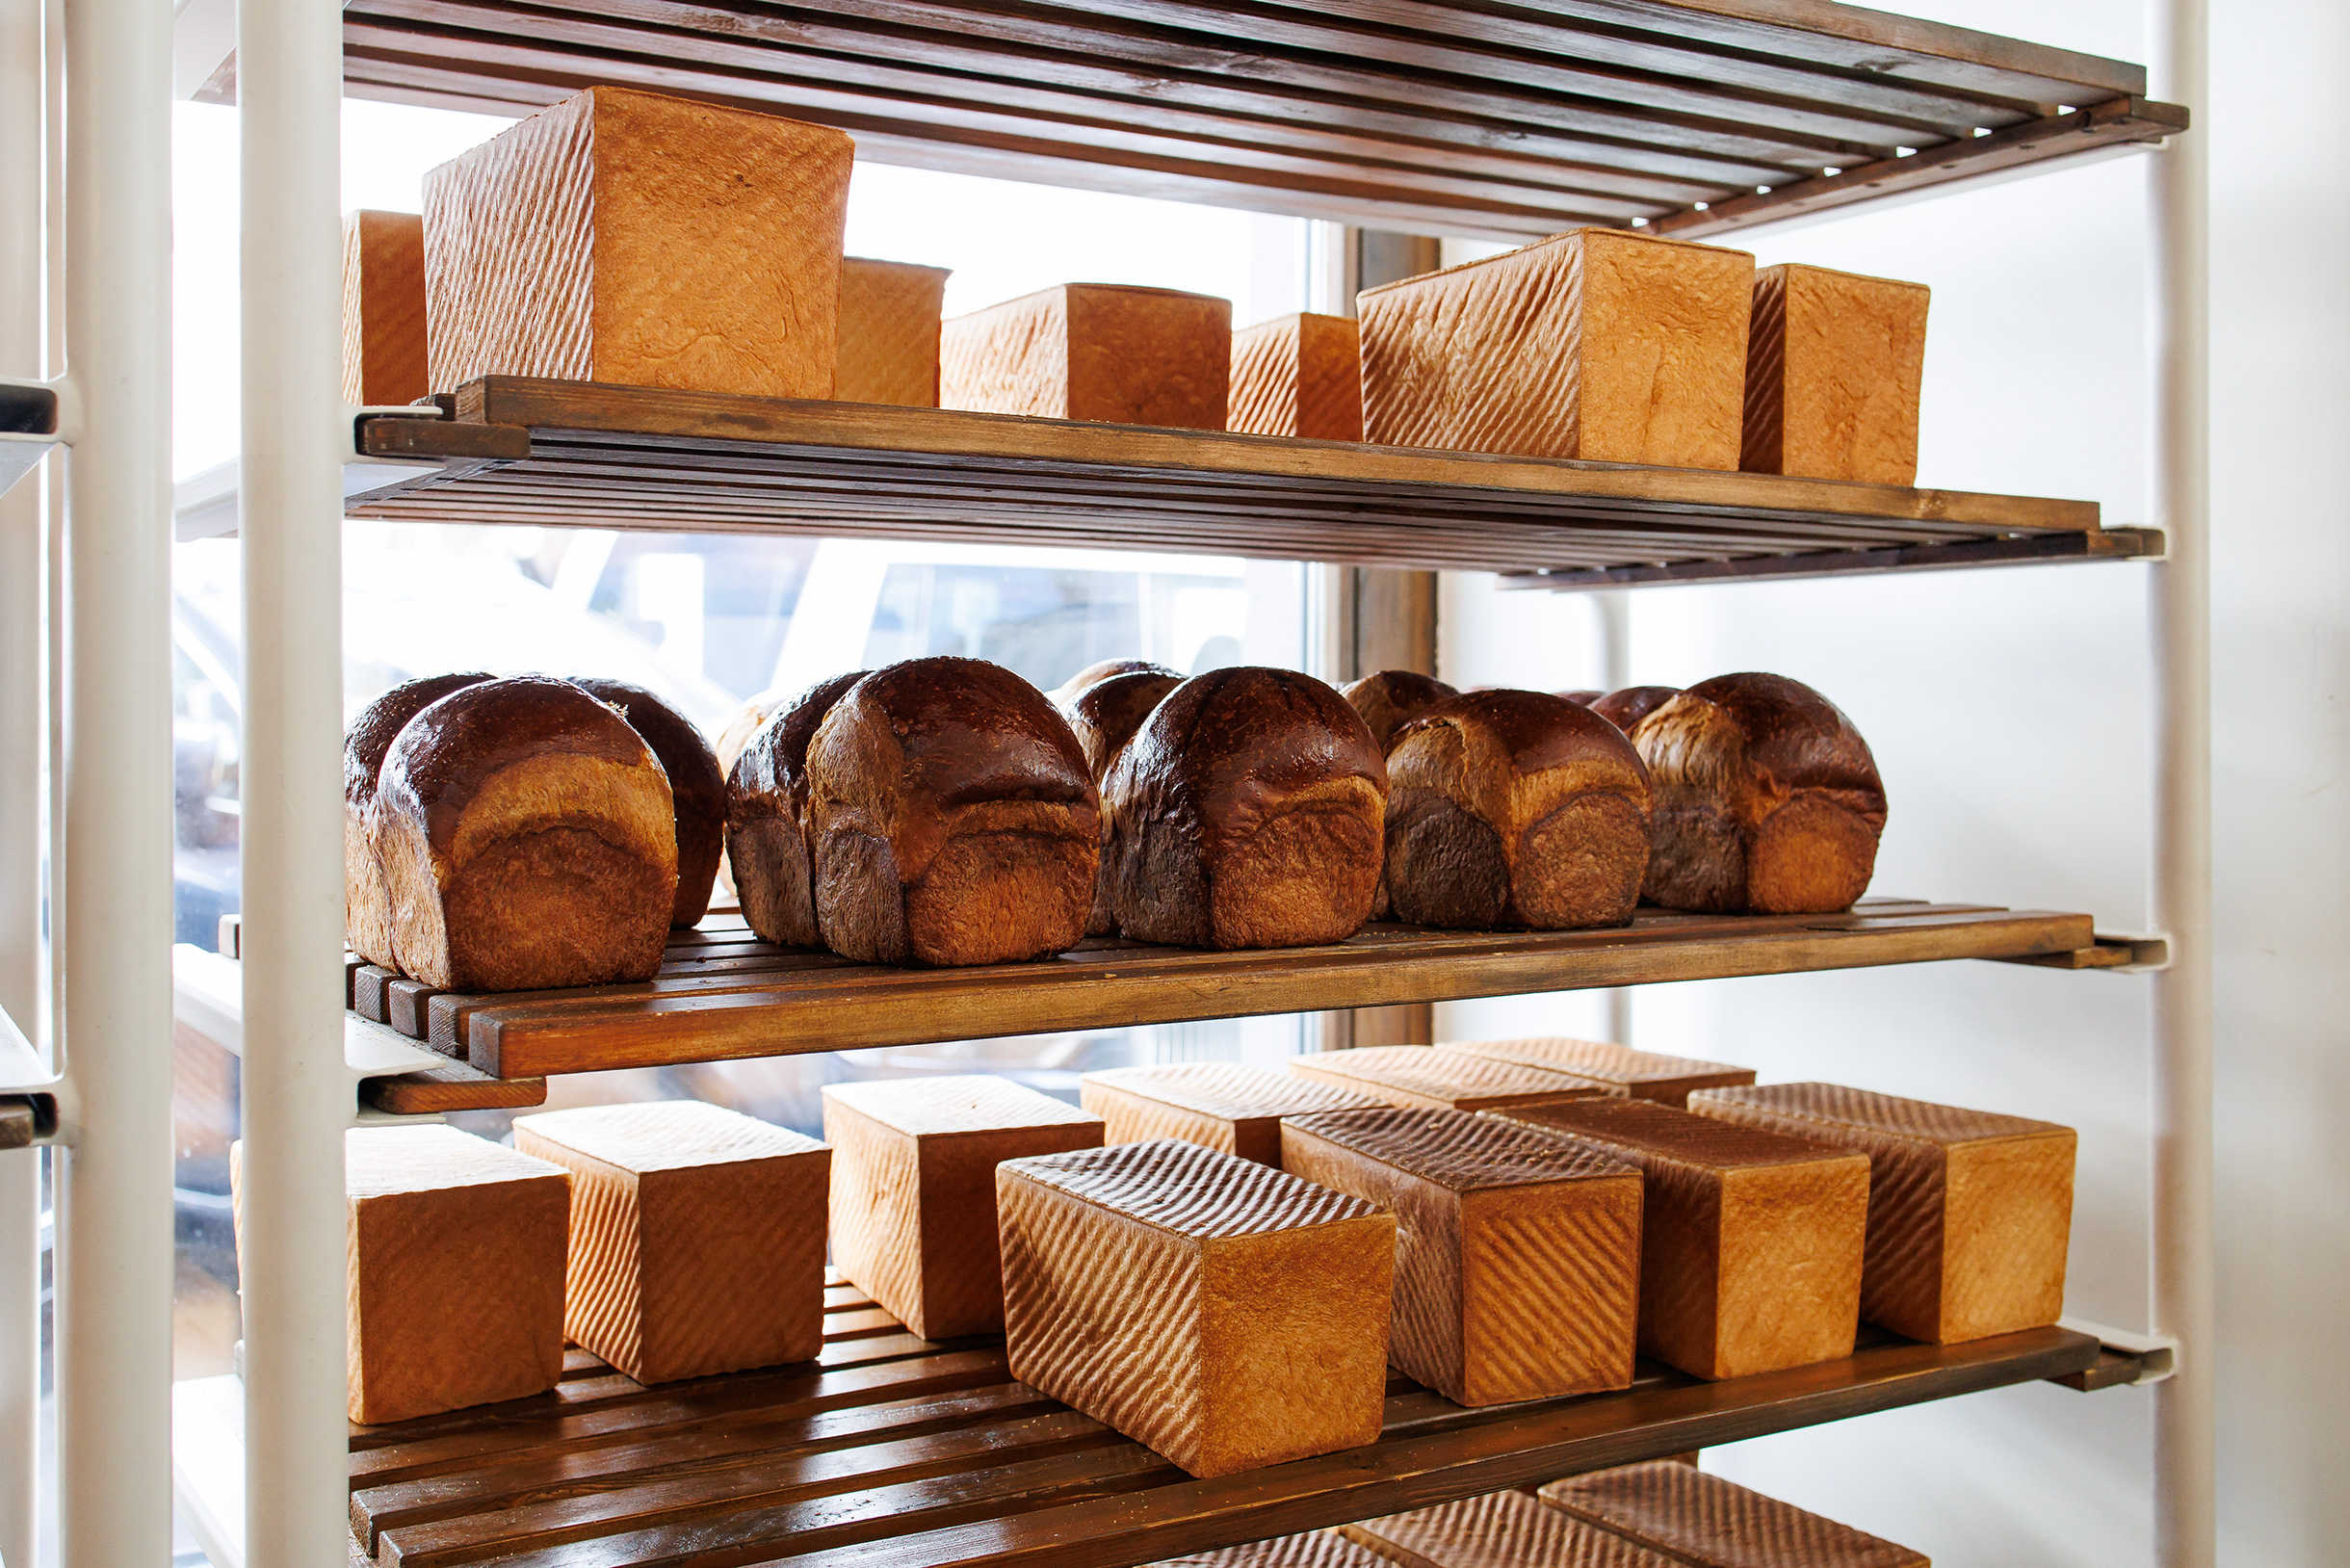 Наблюдать за процессом создания хлеба приятно